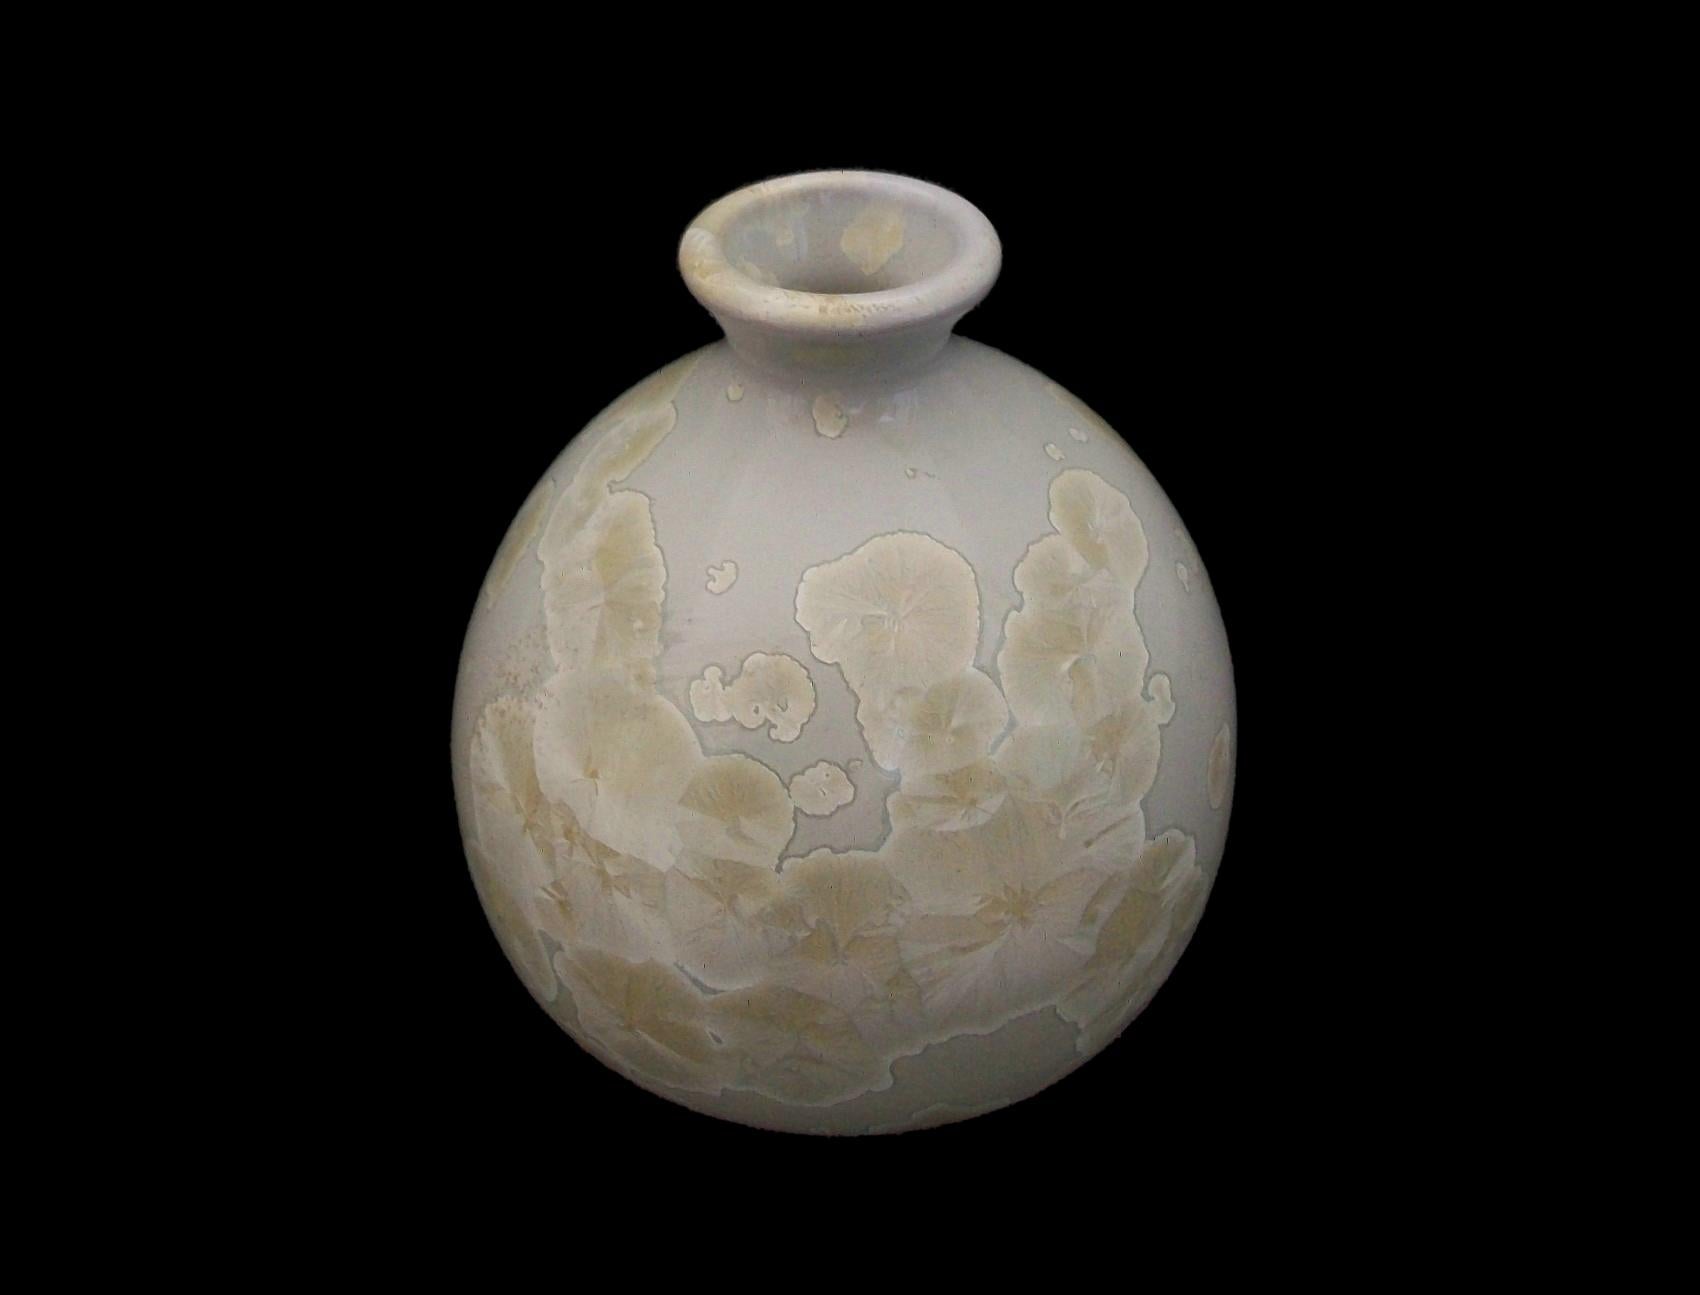 Vase en poterie d'atelier du milieu du siècle avec glaçure cristalline - fait à la main avec un corps en argile blanche tourné au tour avec une distribution artistique de formations cristallines dans la glaçure beige - base non émaillée - signé sur